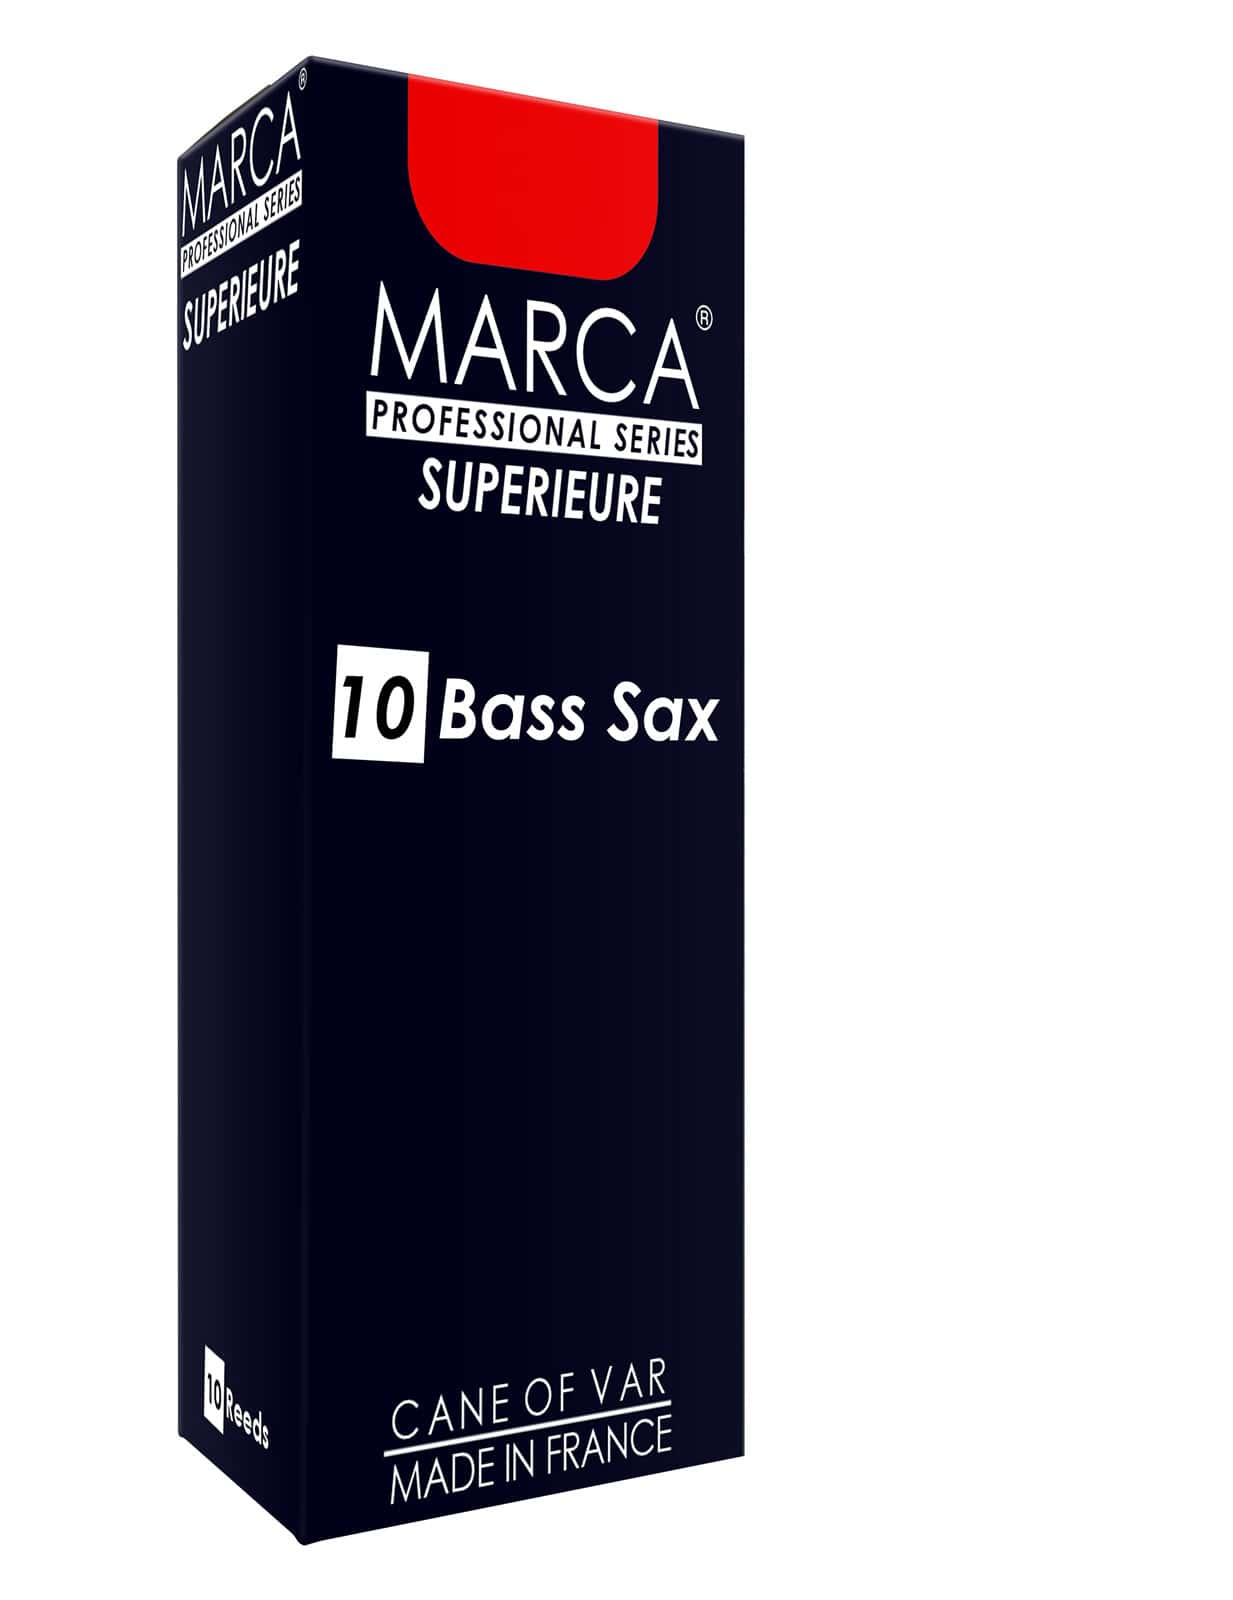 MARCA BLTTER SUPERIEURE BASS-SAXOPHON 1.5